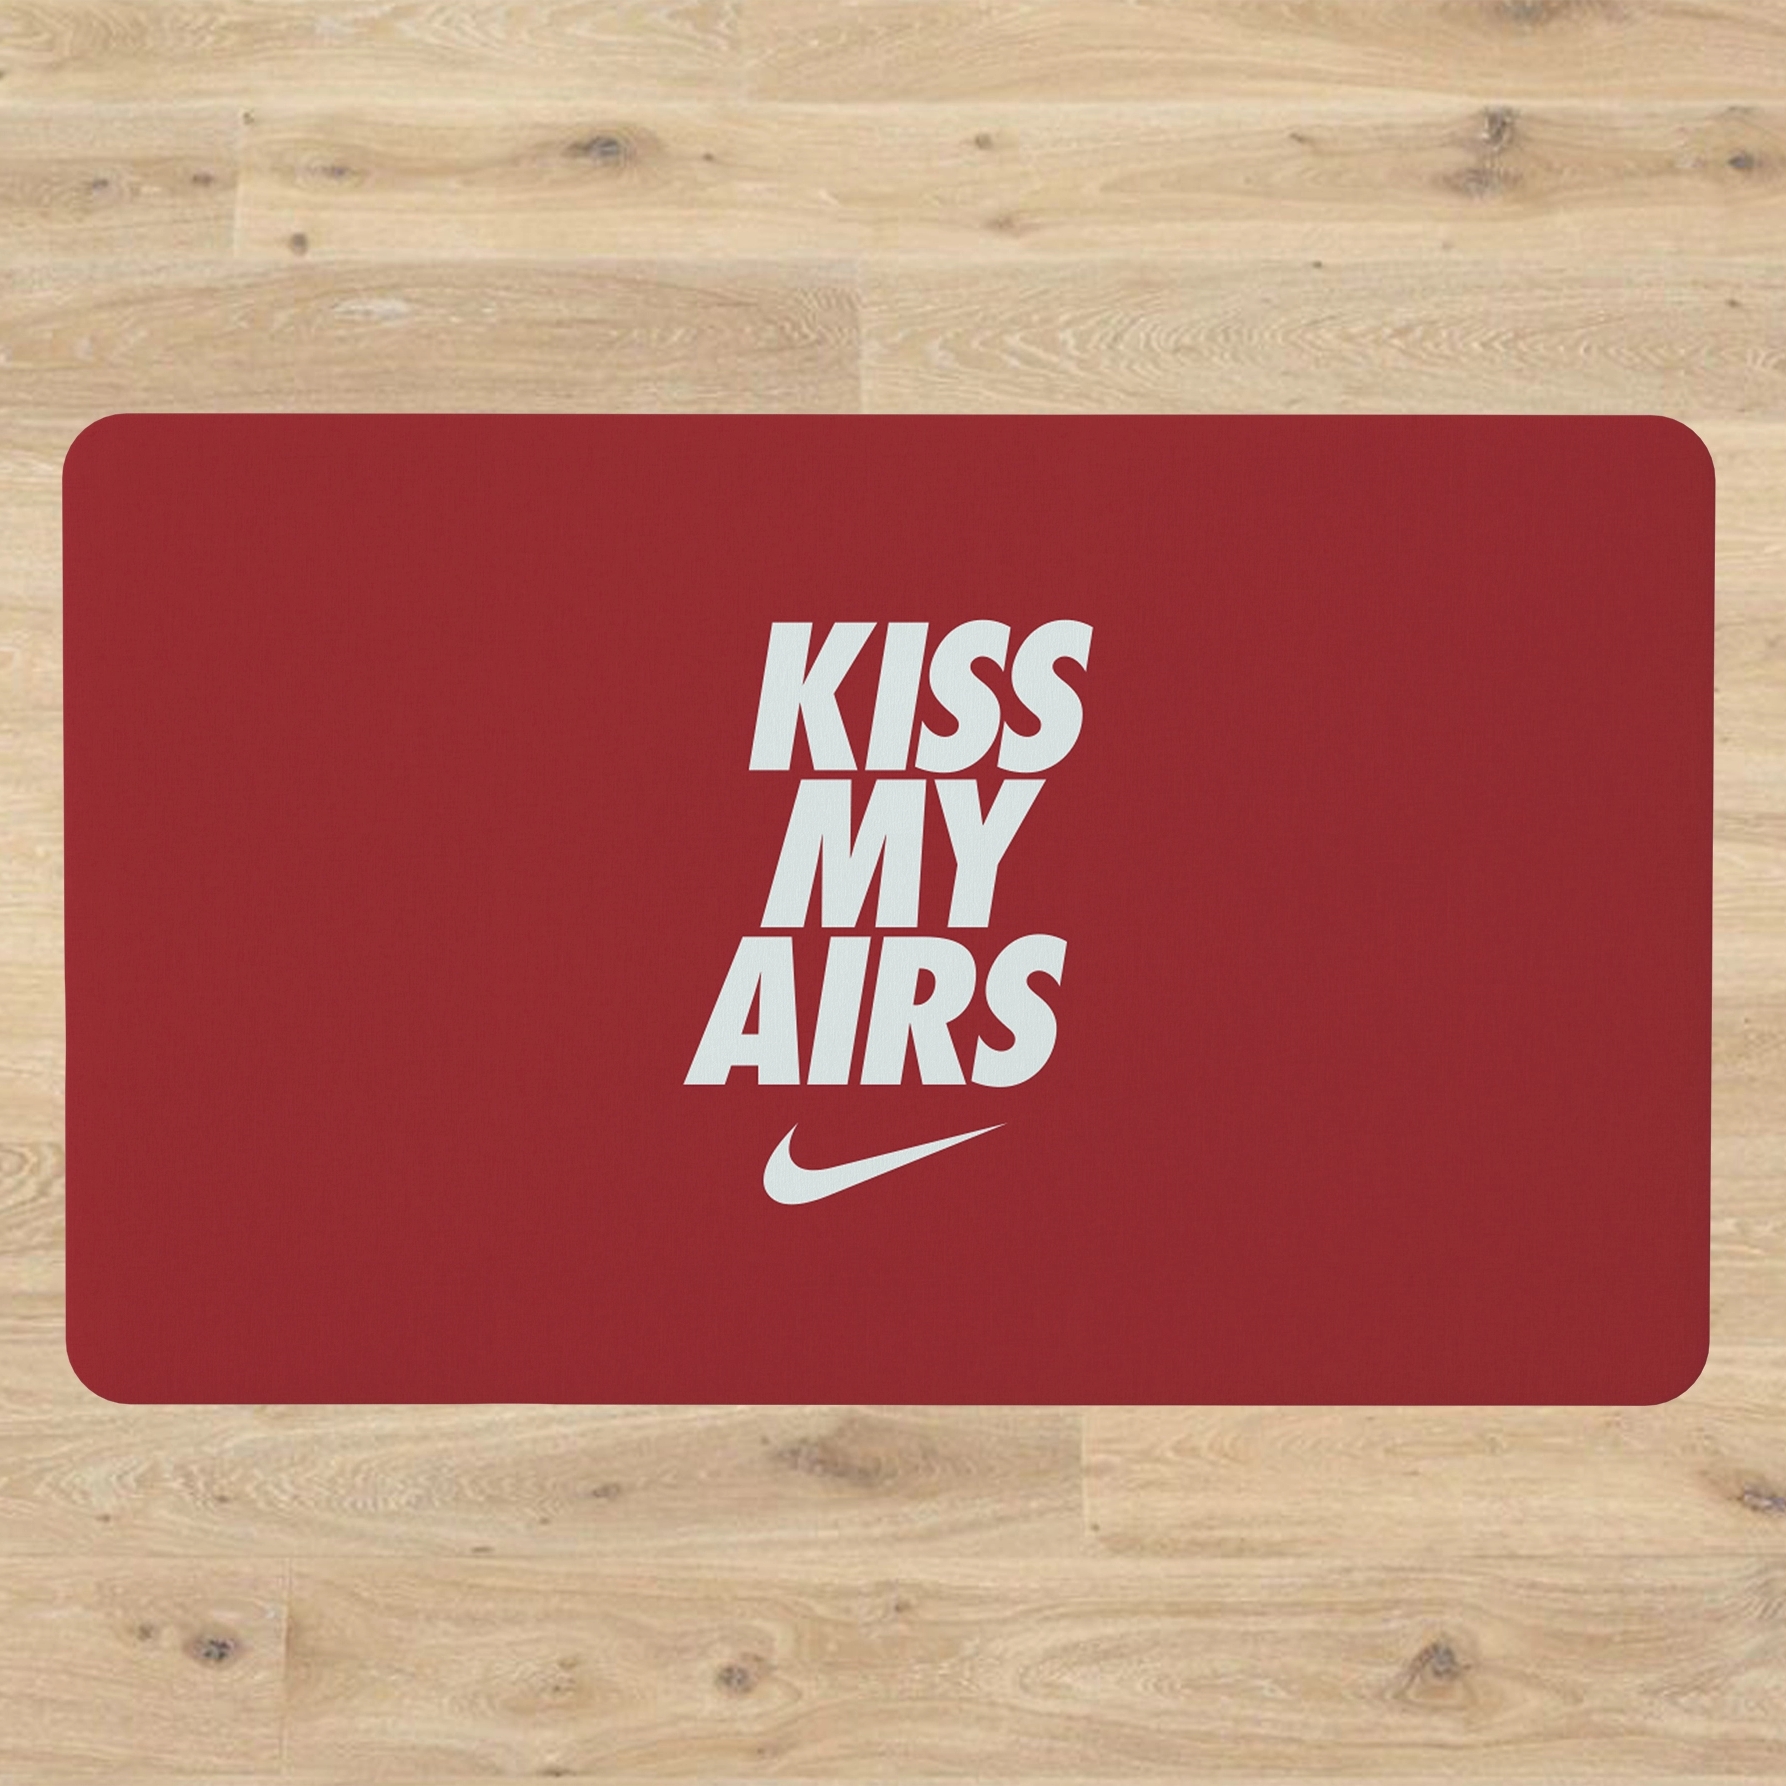 kiss my airs doormat